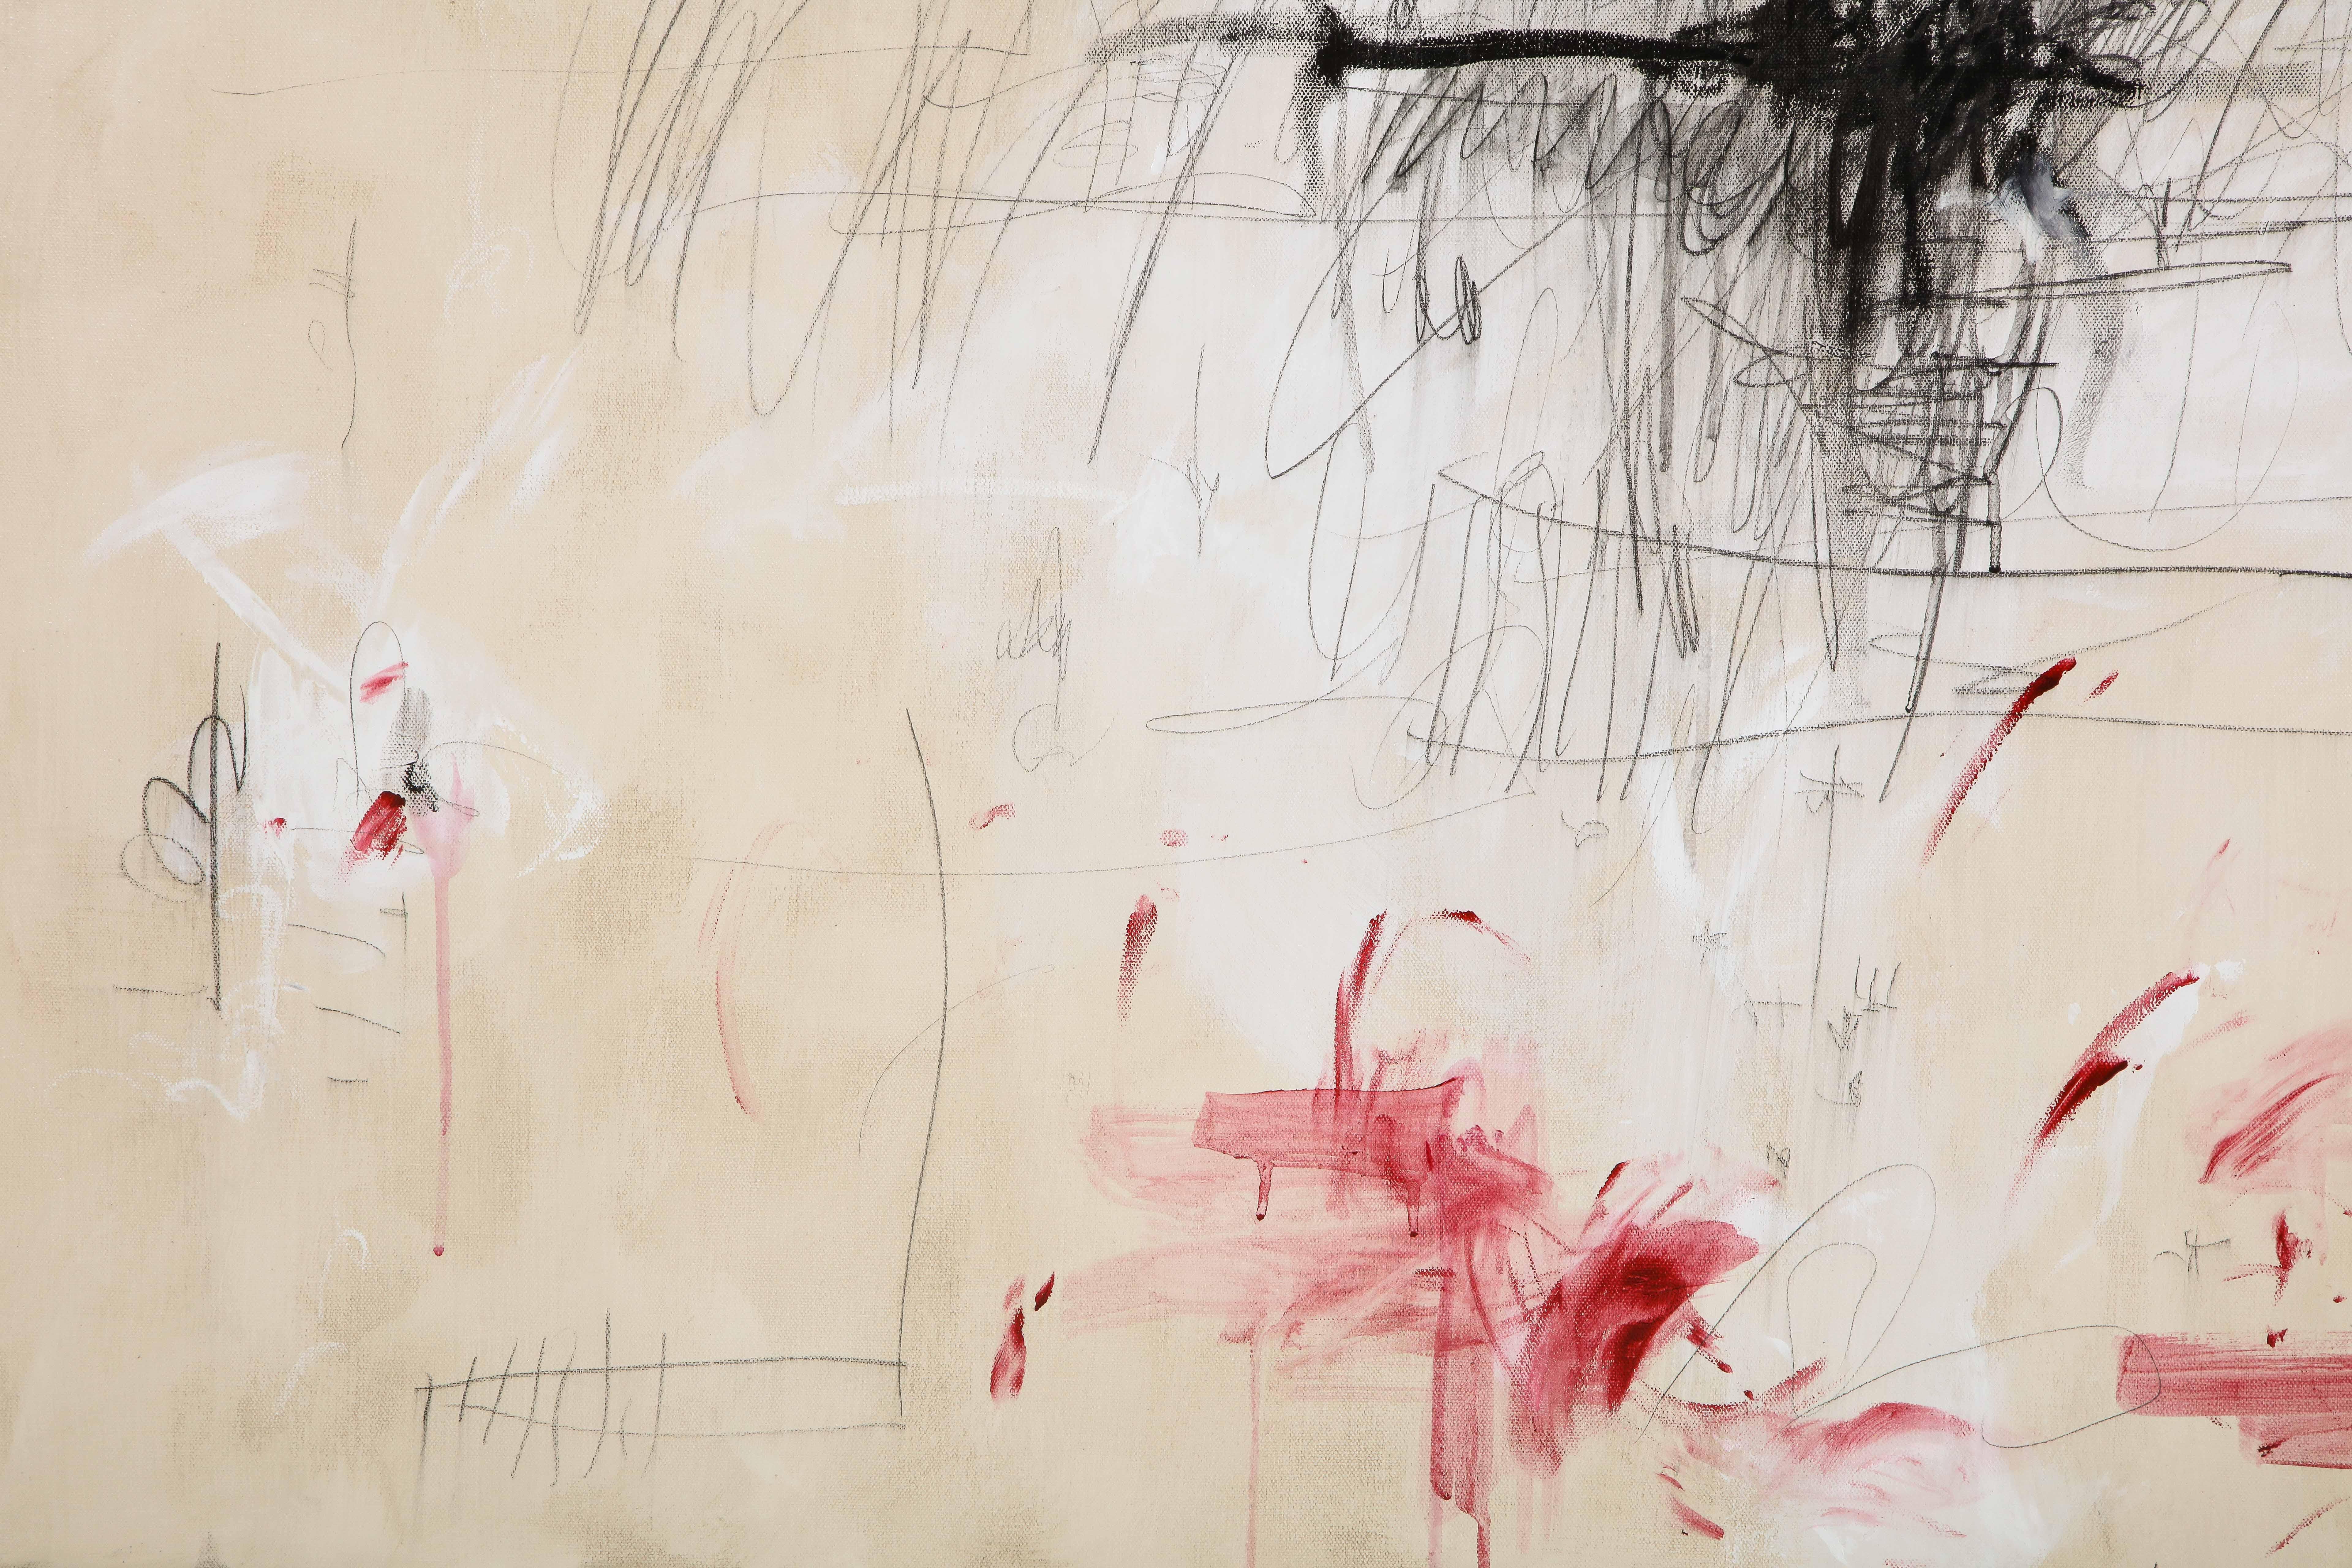 Großes Gemälde „Amore“ in Elfenbein-:: Weiß-:: Schwarz- und Rottönen:: 2::44 m x 3::66 m 6